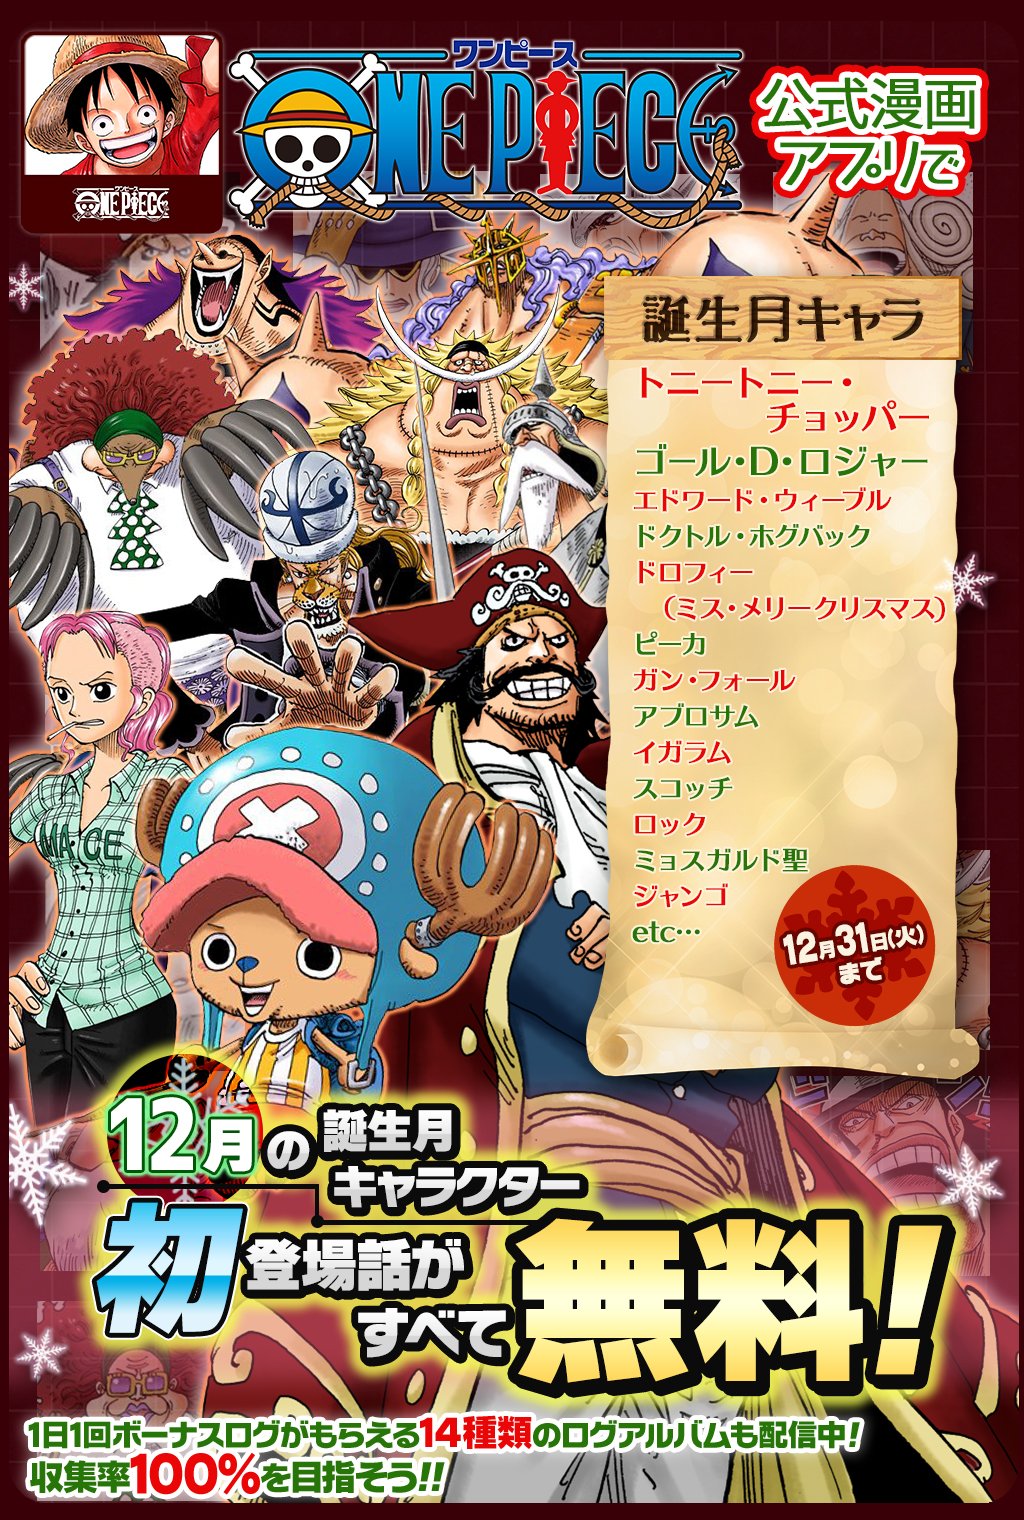 Twitter 上的 One Piece スタッフ 公式 Official 12 31 火 まで 合計25話以上無料 One Piece公式漫画アプリで 12月誕生フェア 開催中 12月に誕生日を迎えるキャラクターの初登場話をフルカラーで読めるぞ T Co Mltapzpwxq セリフなしの登場話も